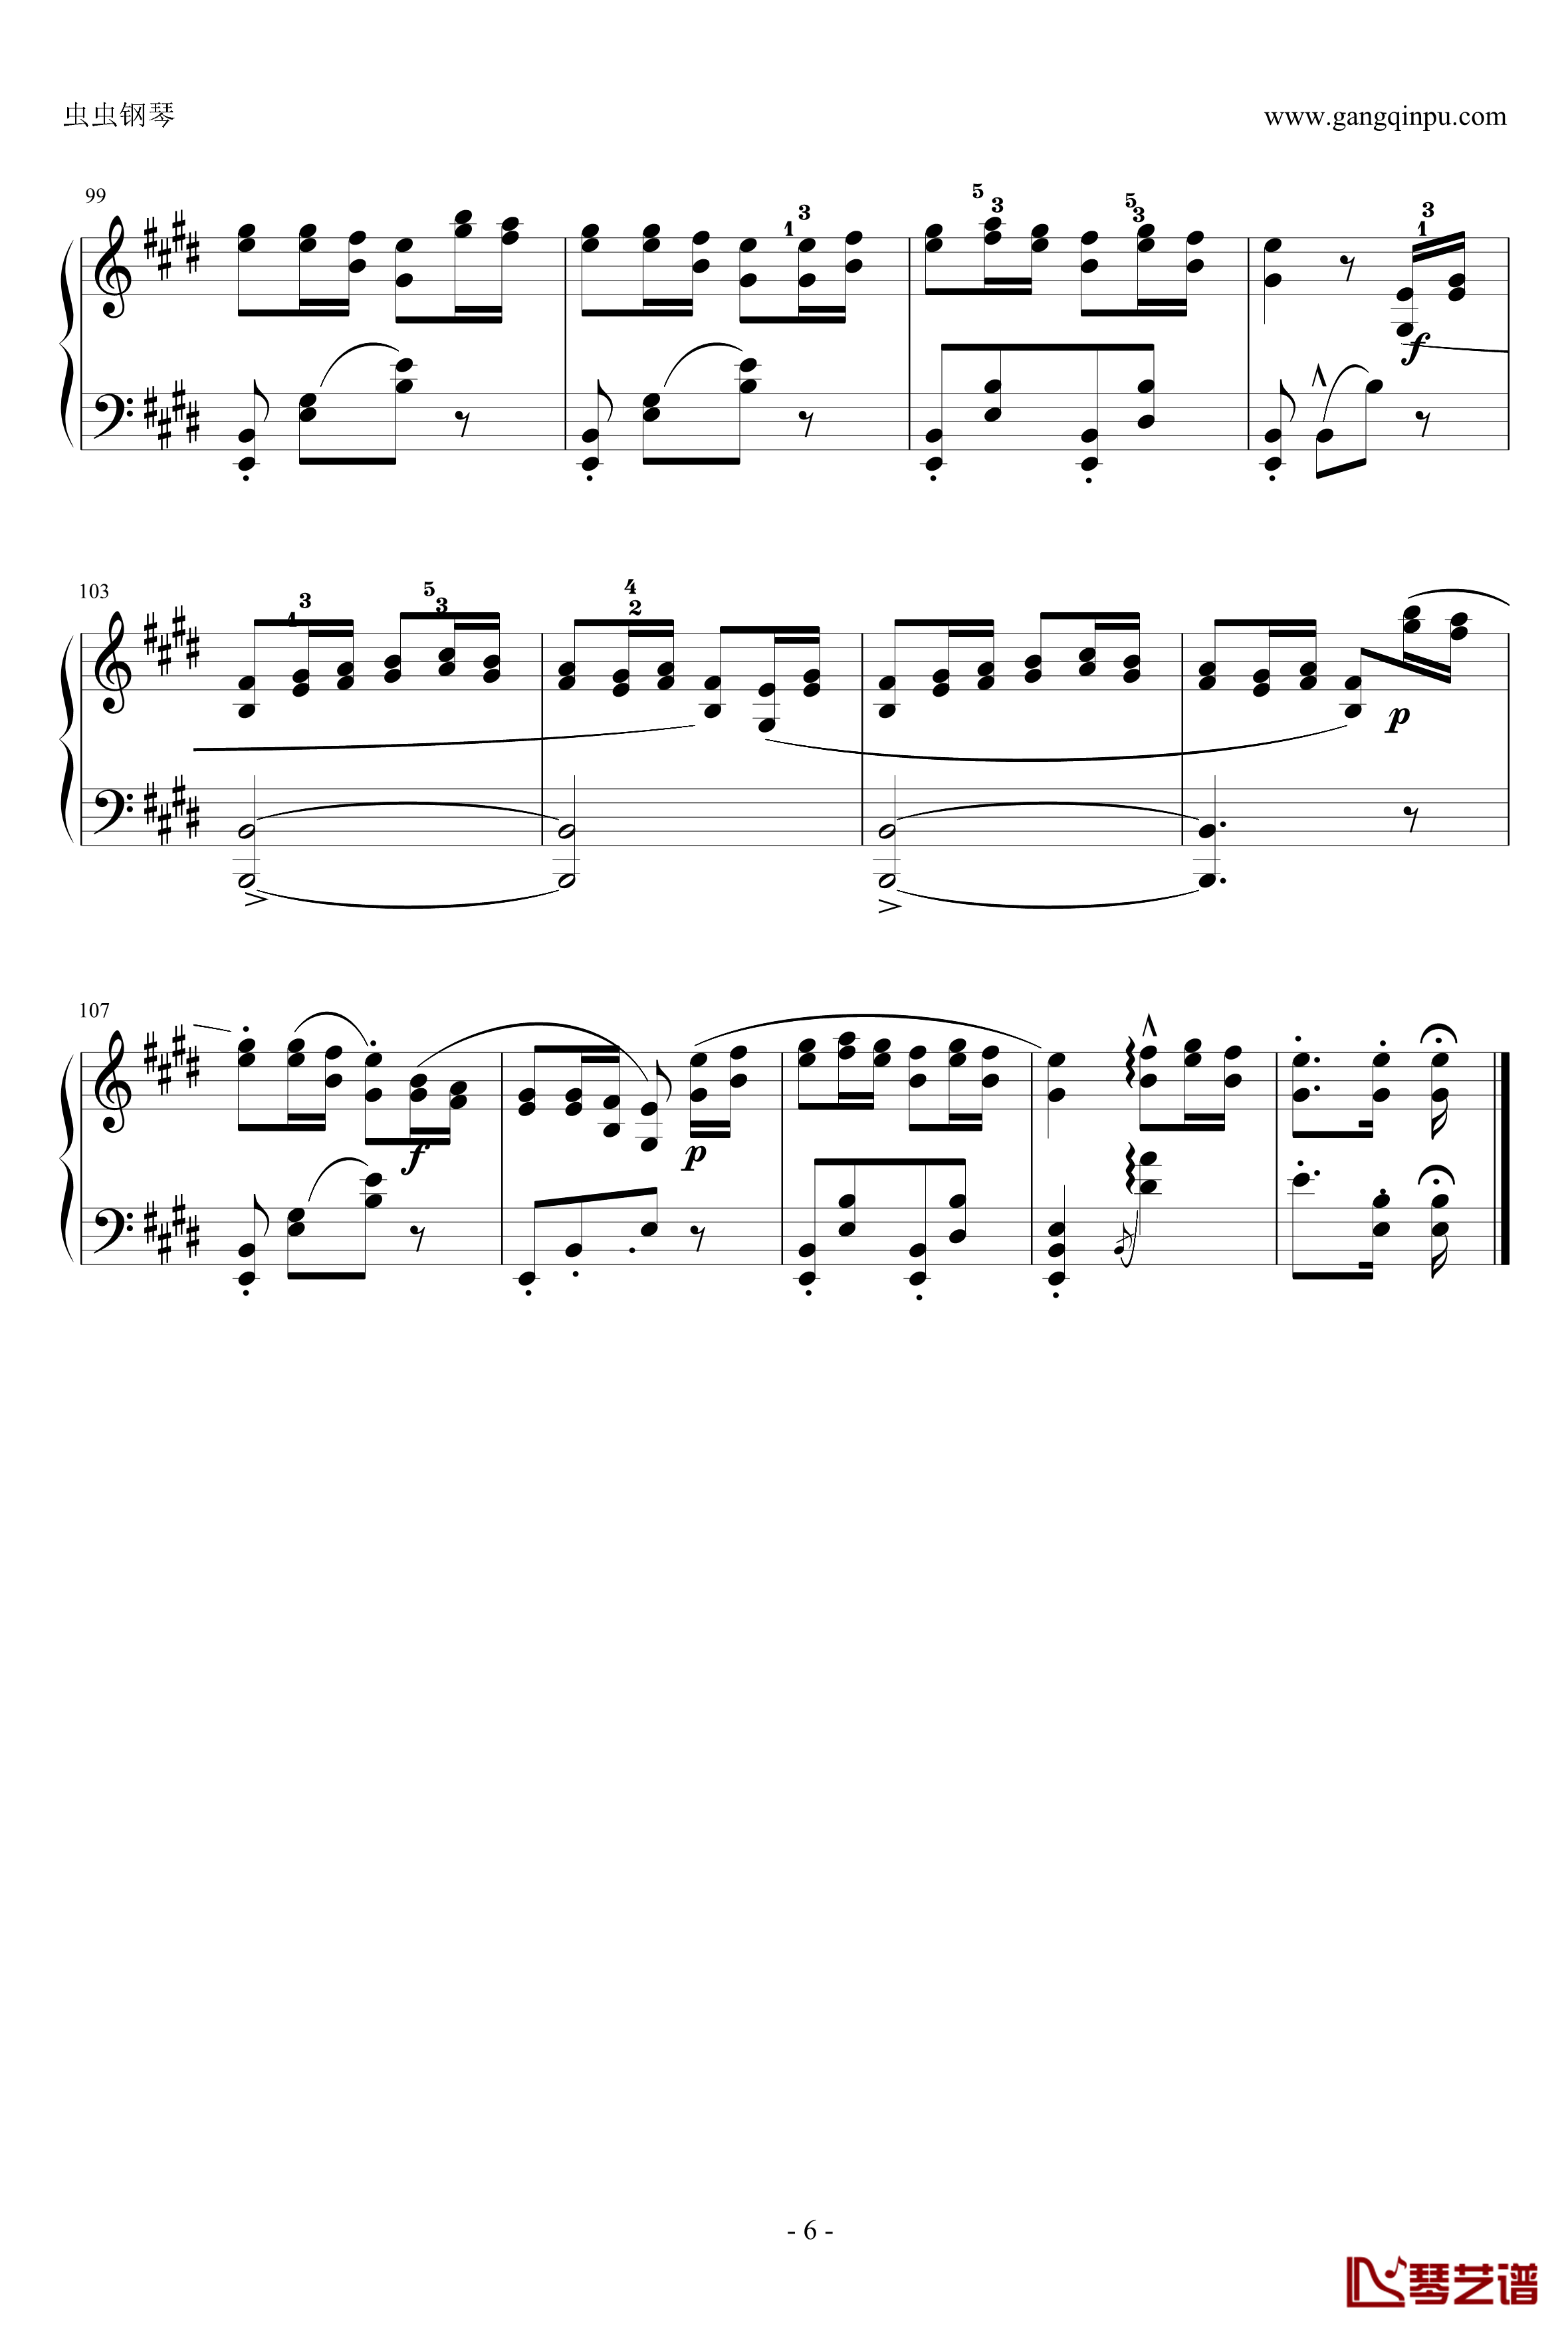 帕格尼尼随想曲钢琴谱-第９首-舒曼6